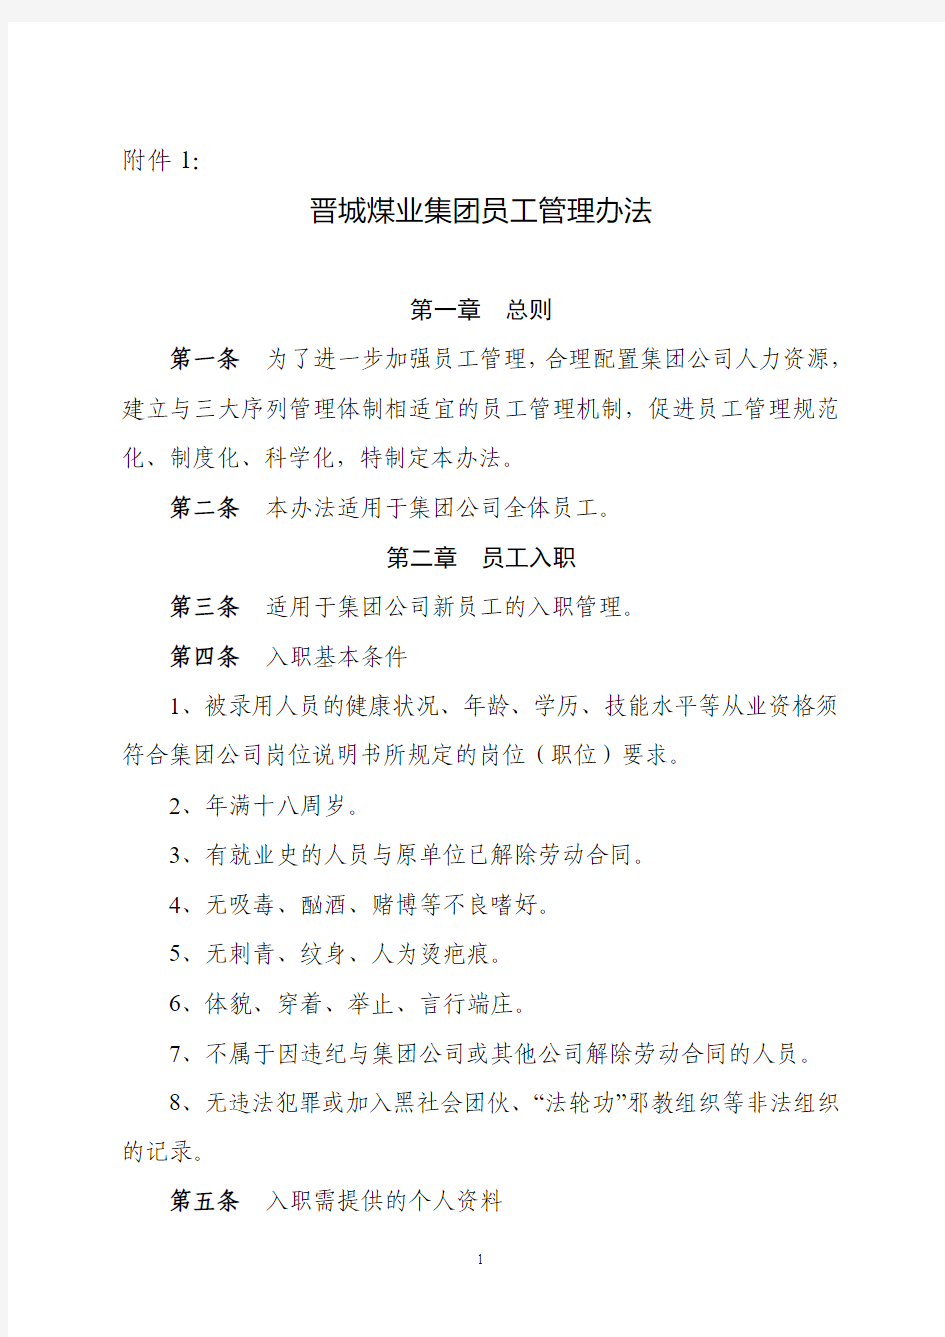 晋城煤业集团员工管理办法20110525035